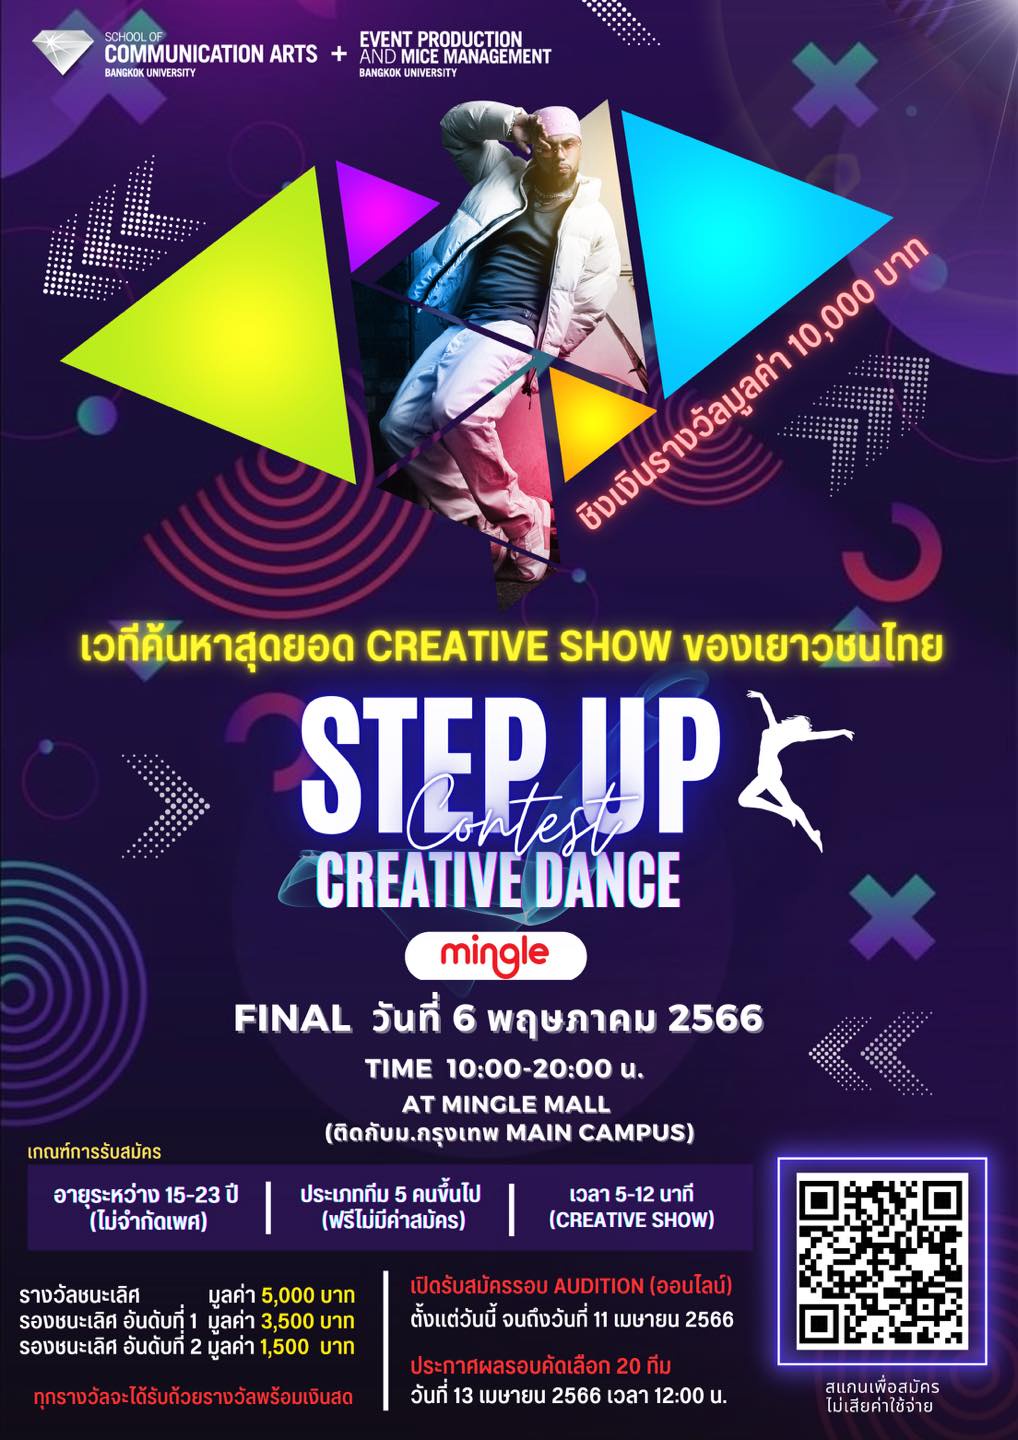 ขอเชิญร่วมแข่งขัน Creative Dance ใน STEP UP Creative Dance Contest